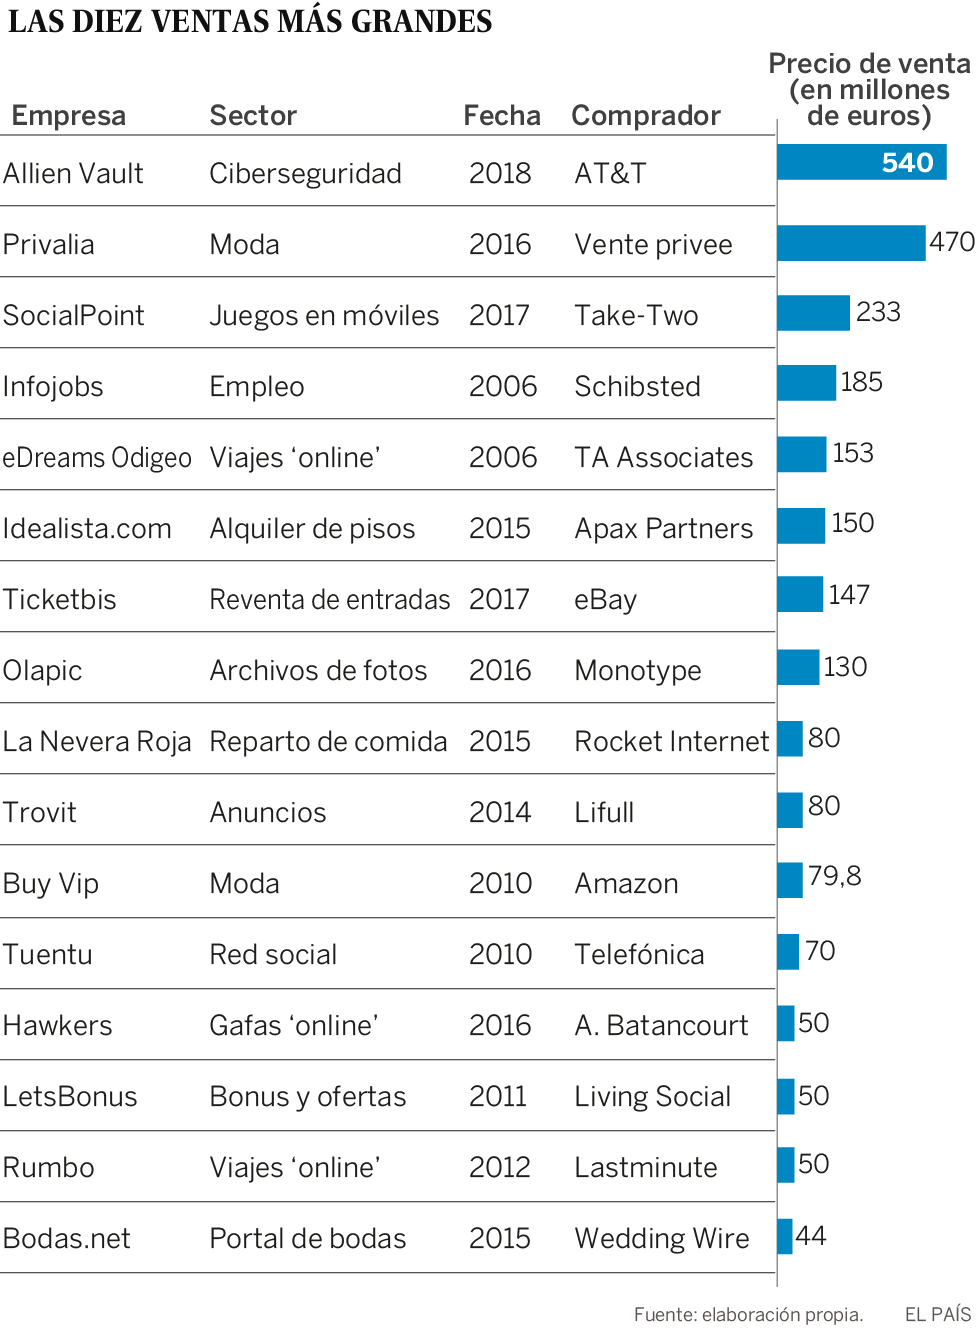 La explosión de las ‘start-ups’ en España: de pisos y coches a bodas y viajes